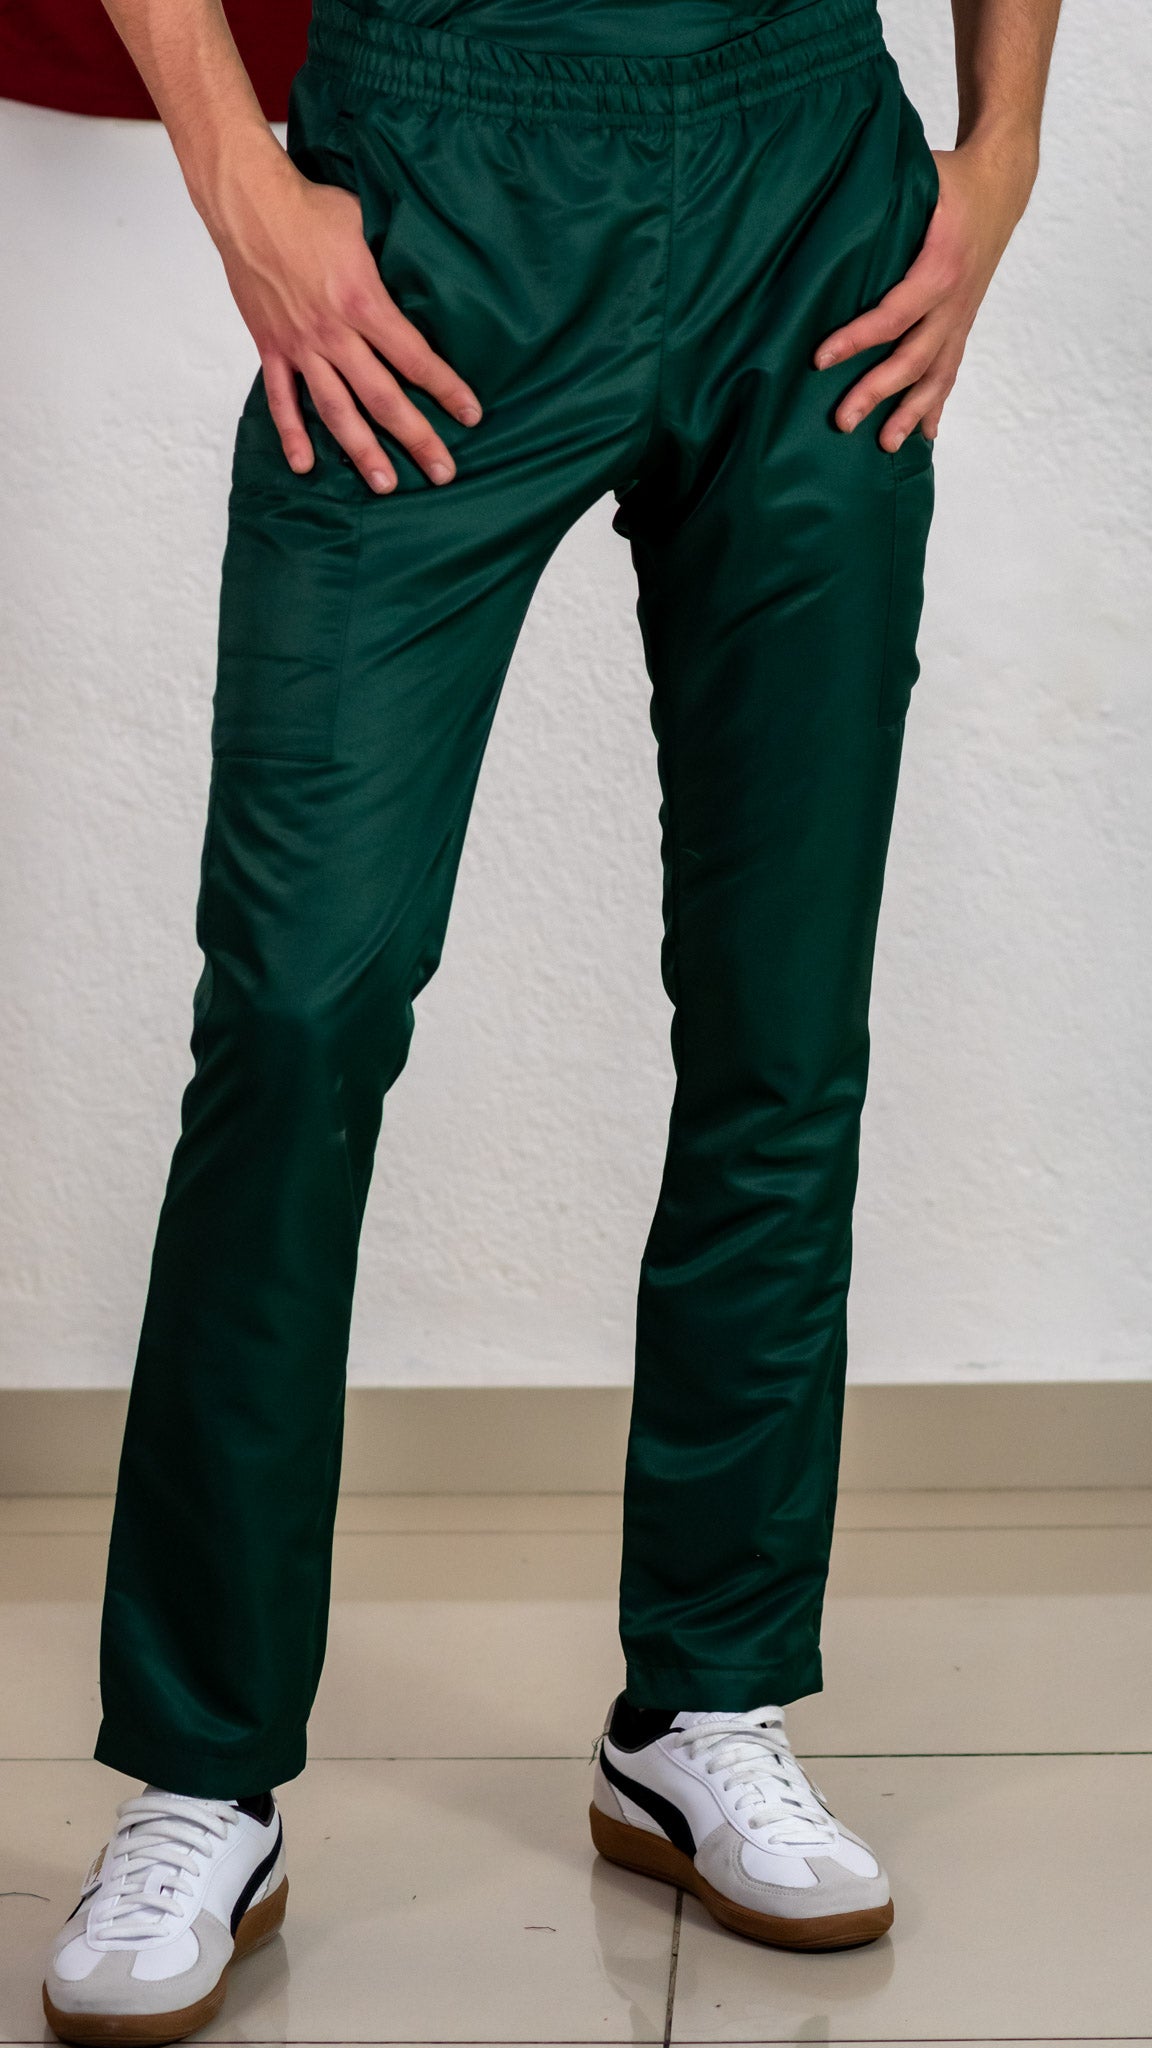 Pantalon Quirurgico Verde Botella Microfibra Hombre.